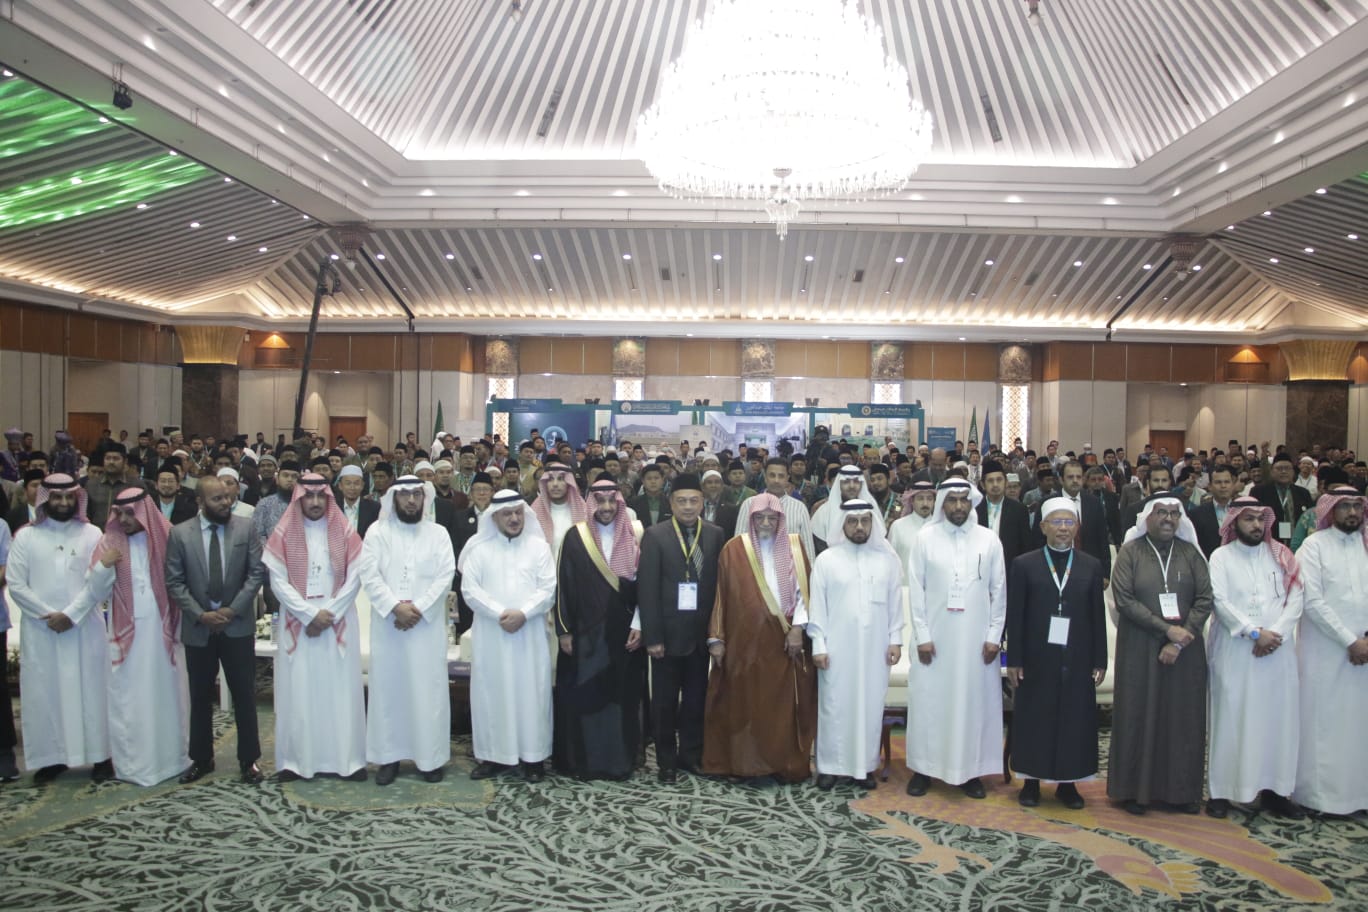 Pertemuan Alumni Universitas Arab Saudi Diikuti 700 Peserta dari 13 Negara